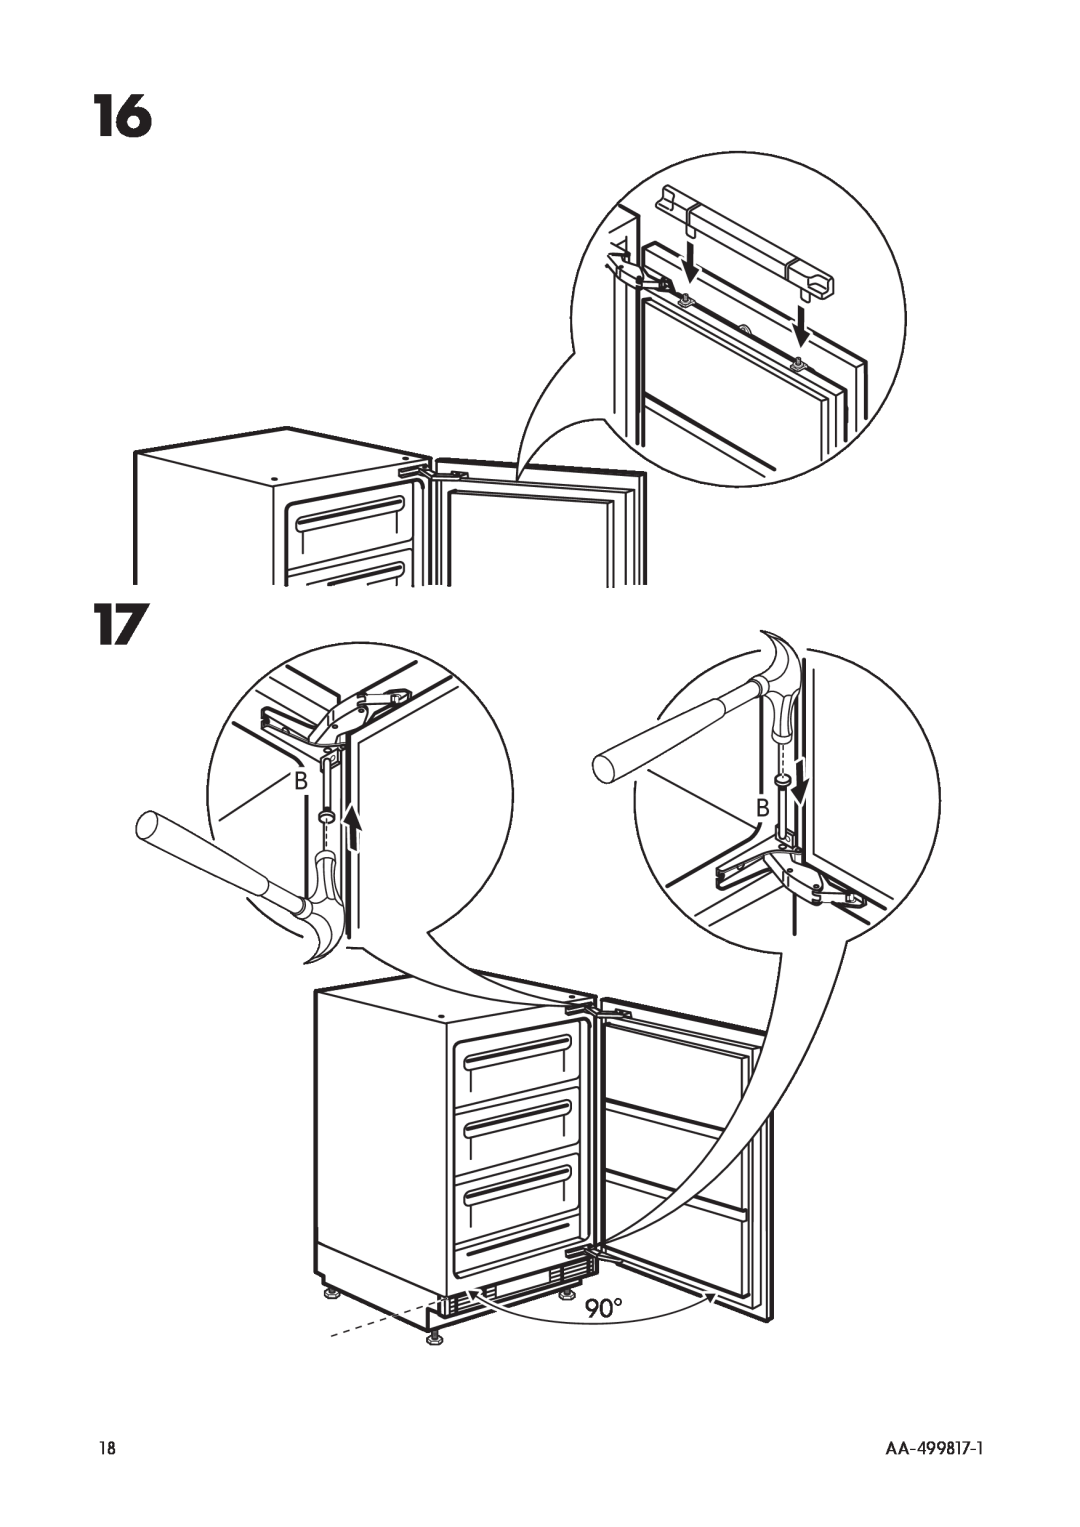 IKEA SF98 manual B B 90o, AA-499817-1 